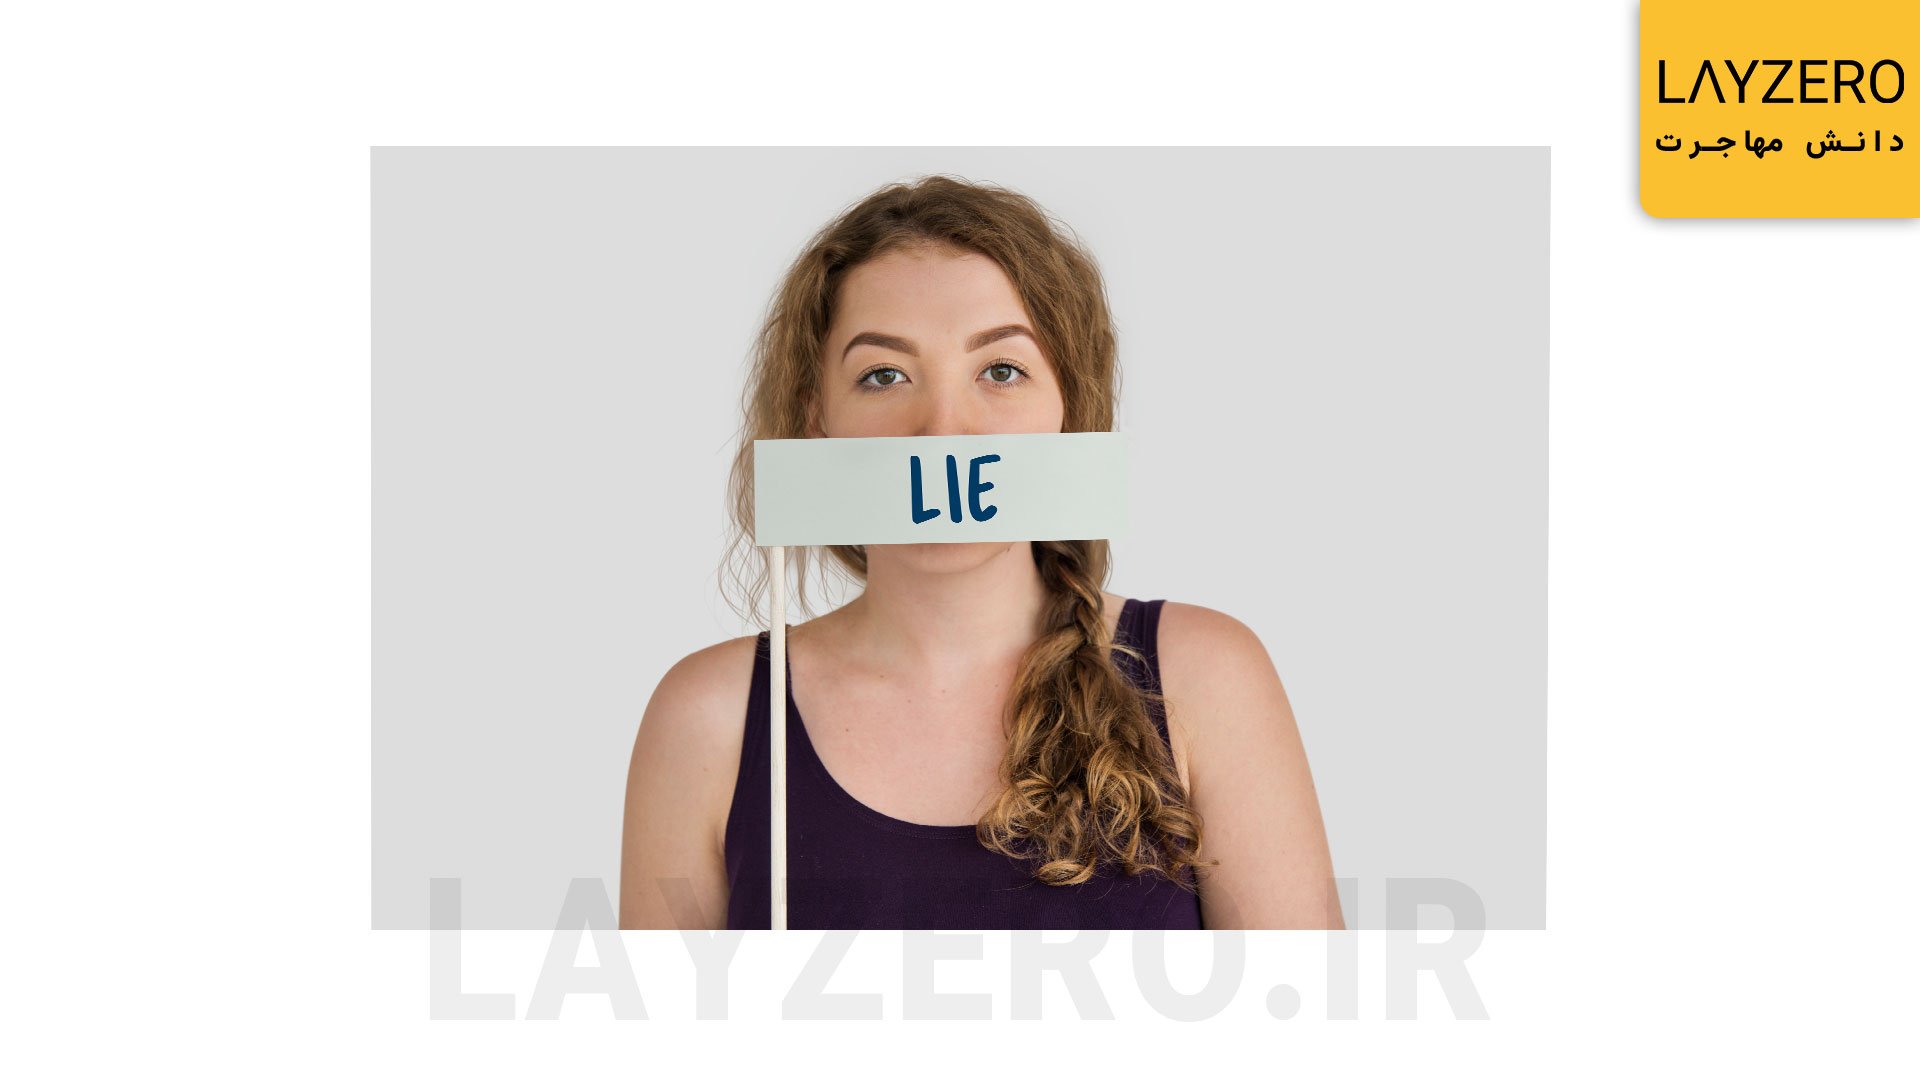 دروغ گویی و پنهان کاری از دلایل رد شدن در مصاحبه لاتاری